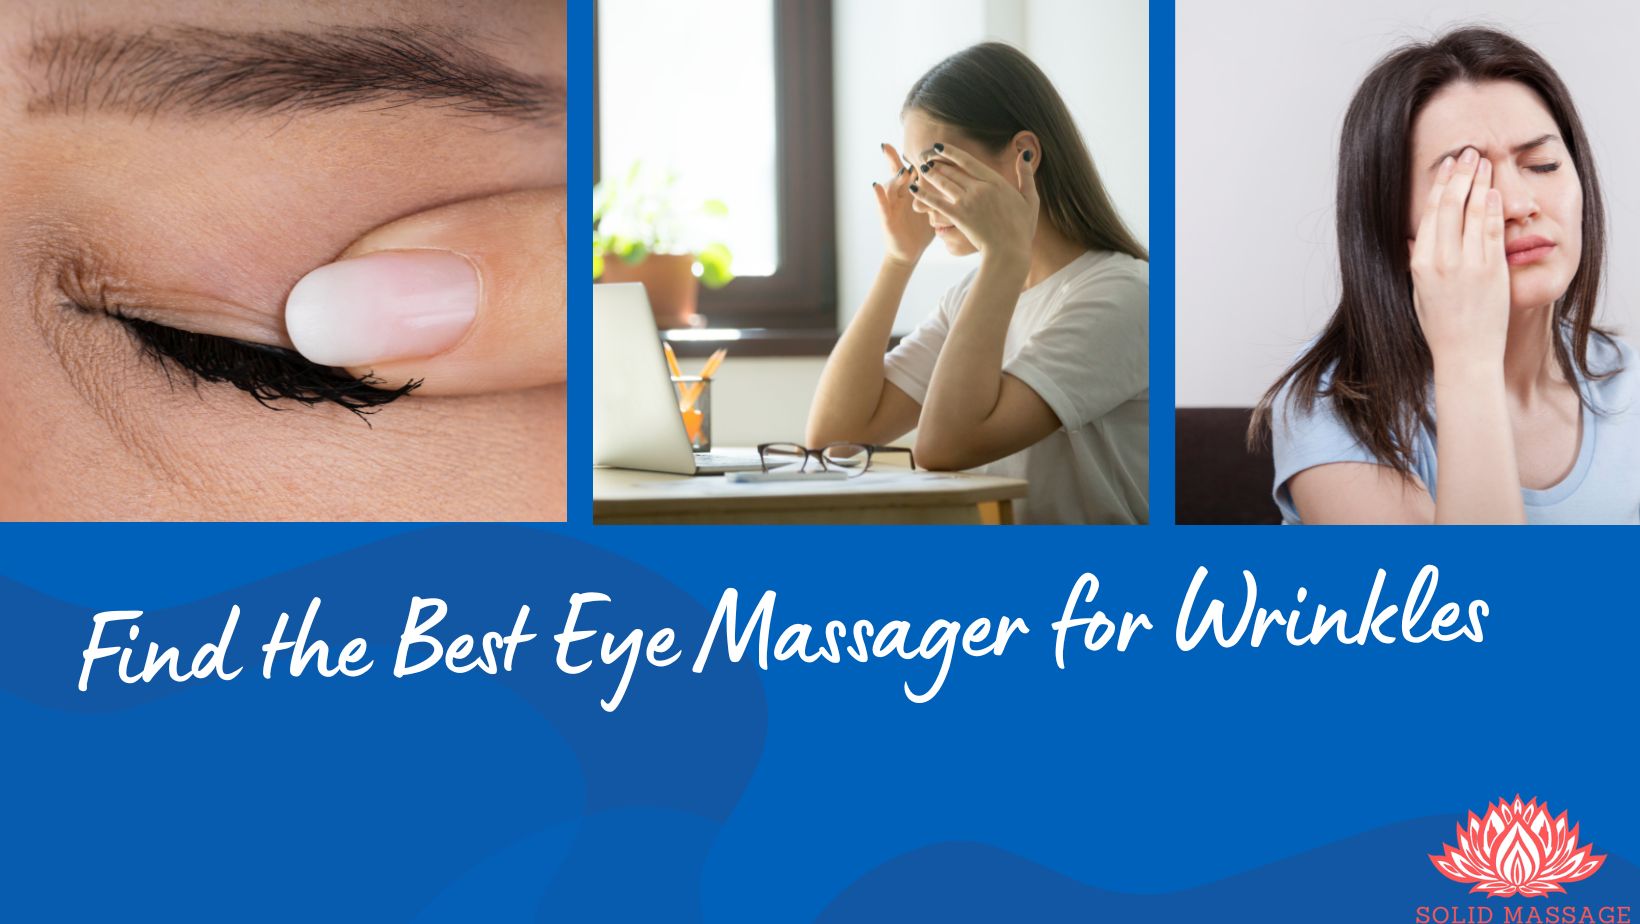 Best Eye Massager for Wrinkles